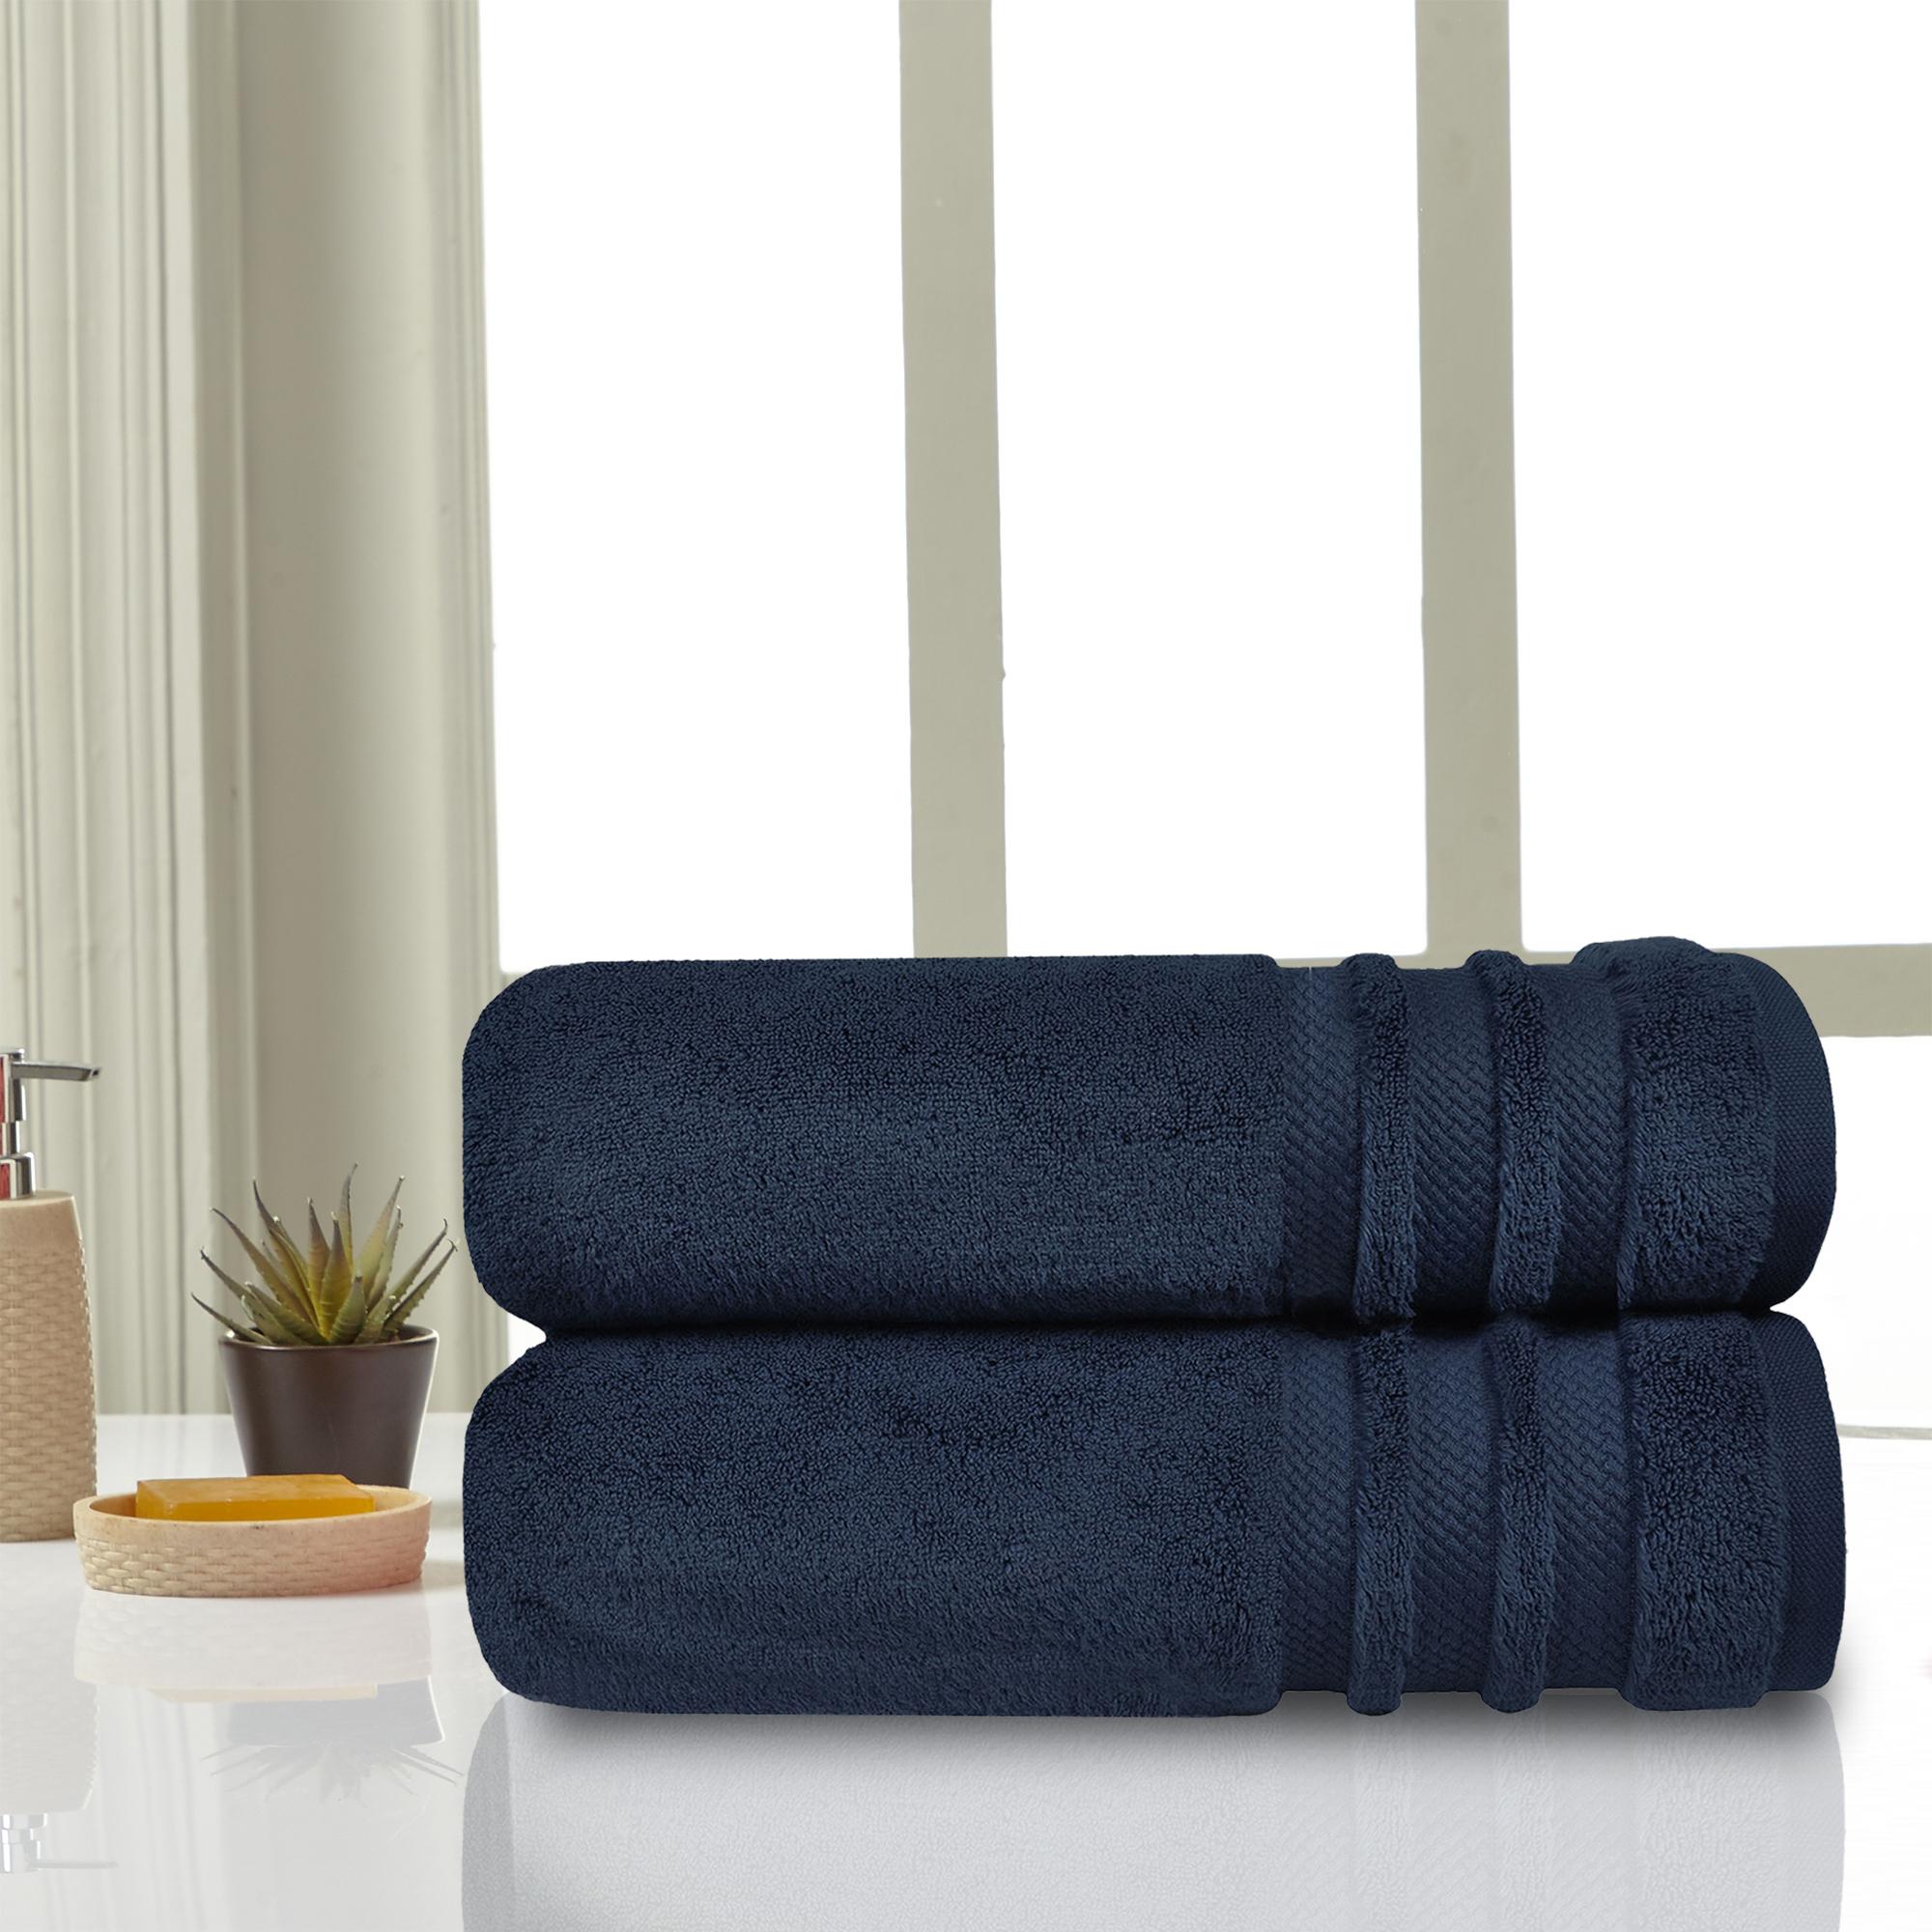 2pcs Hotel Premier Collection 100% Cotton Luxury Bath Blue Towels 